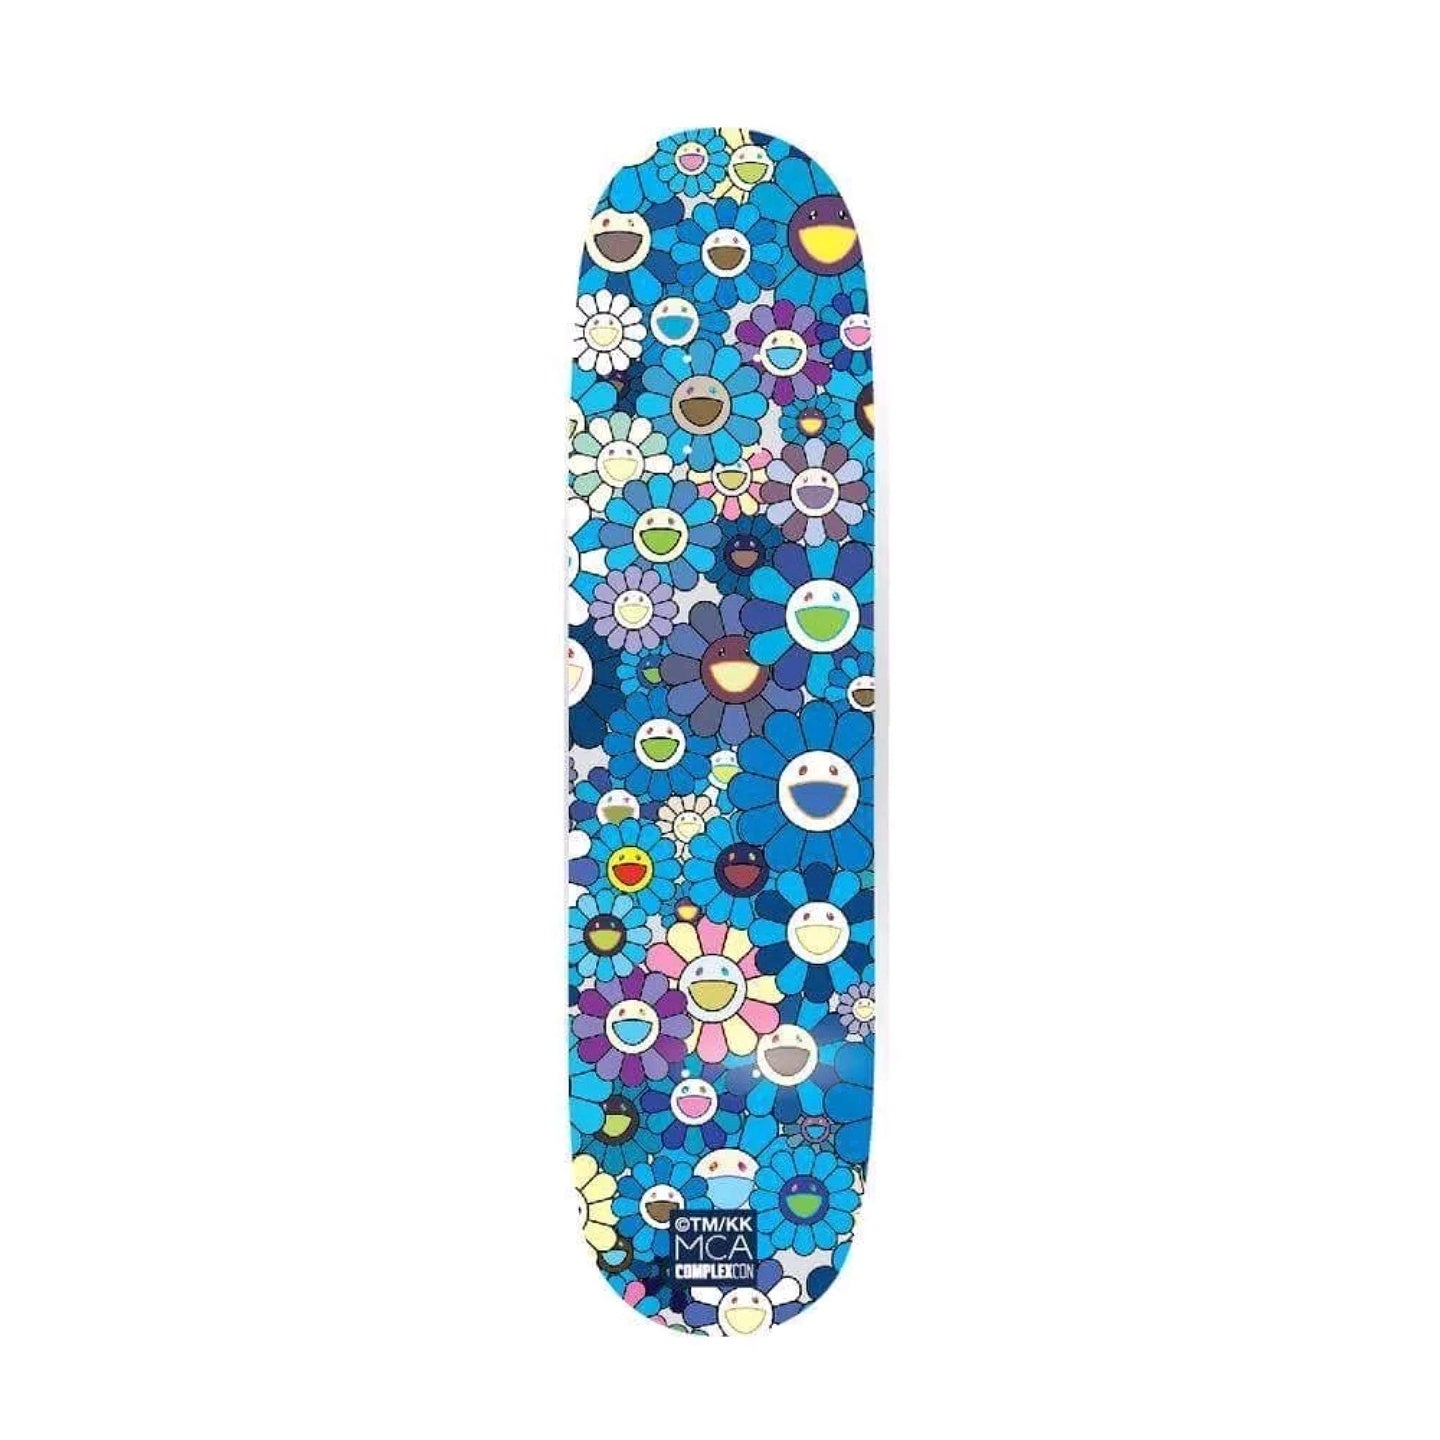 Takashi Murakami Skateboard - Blue Floral Edition